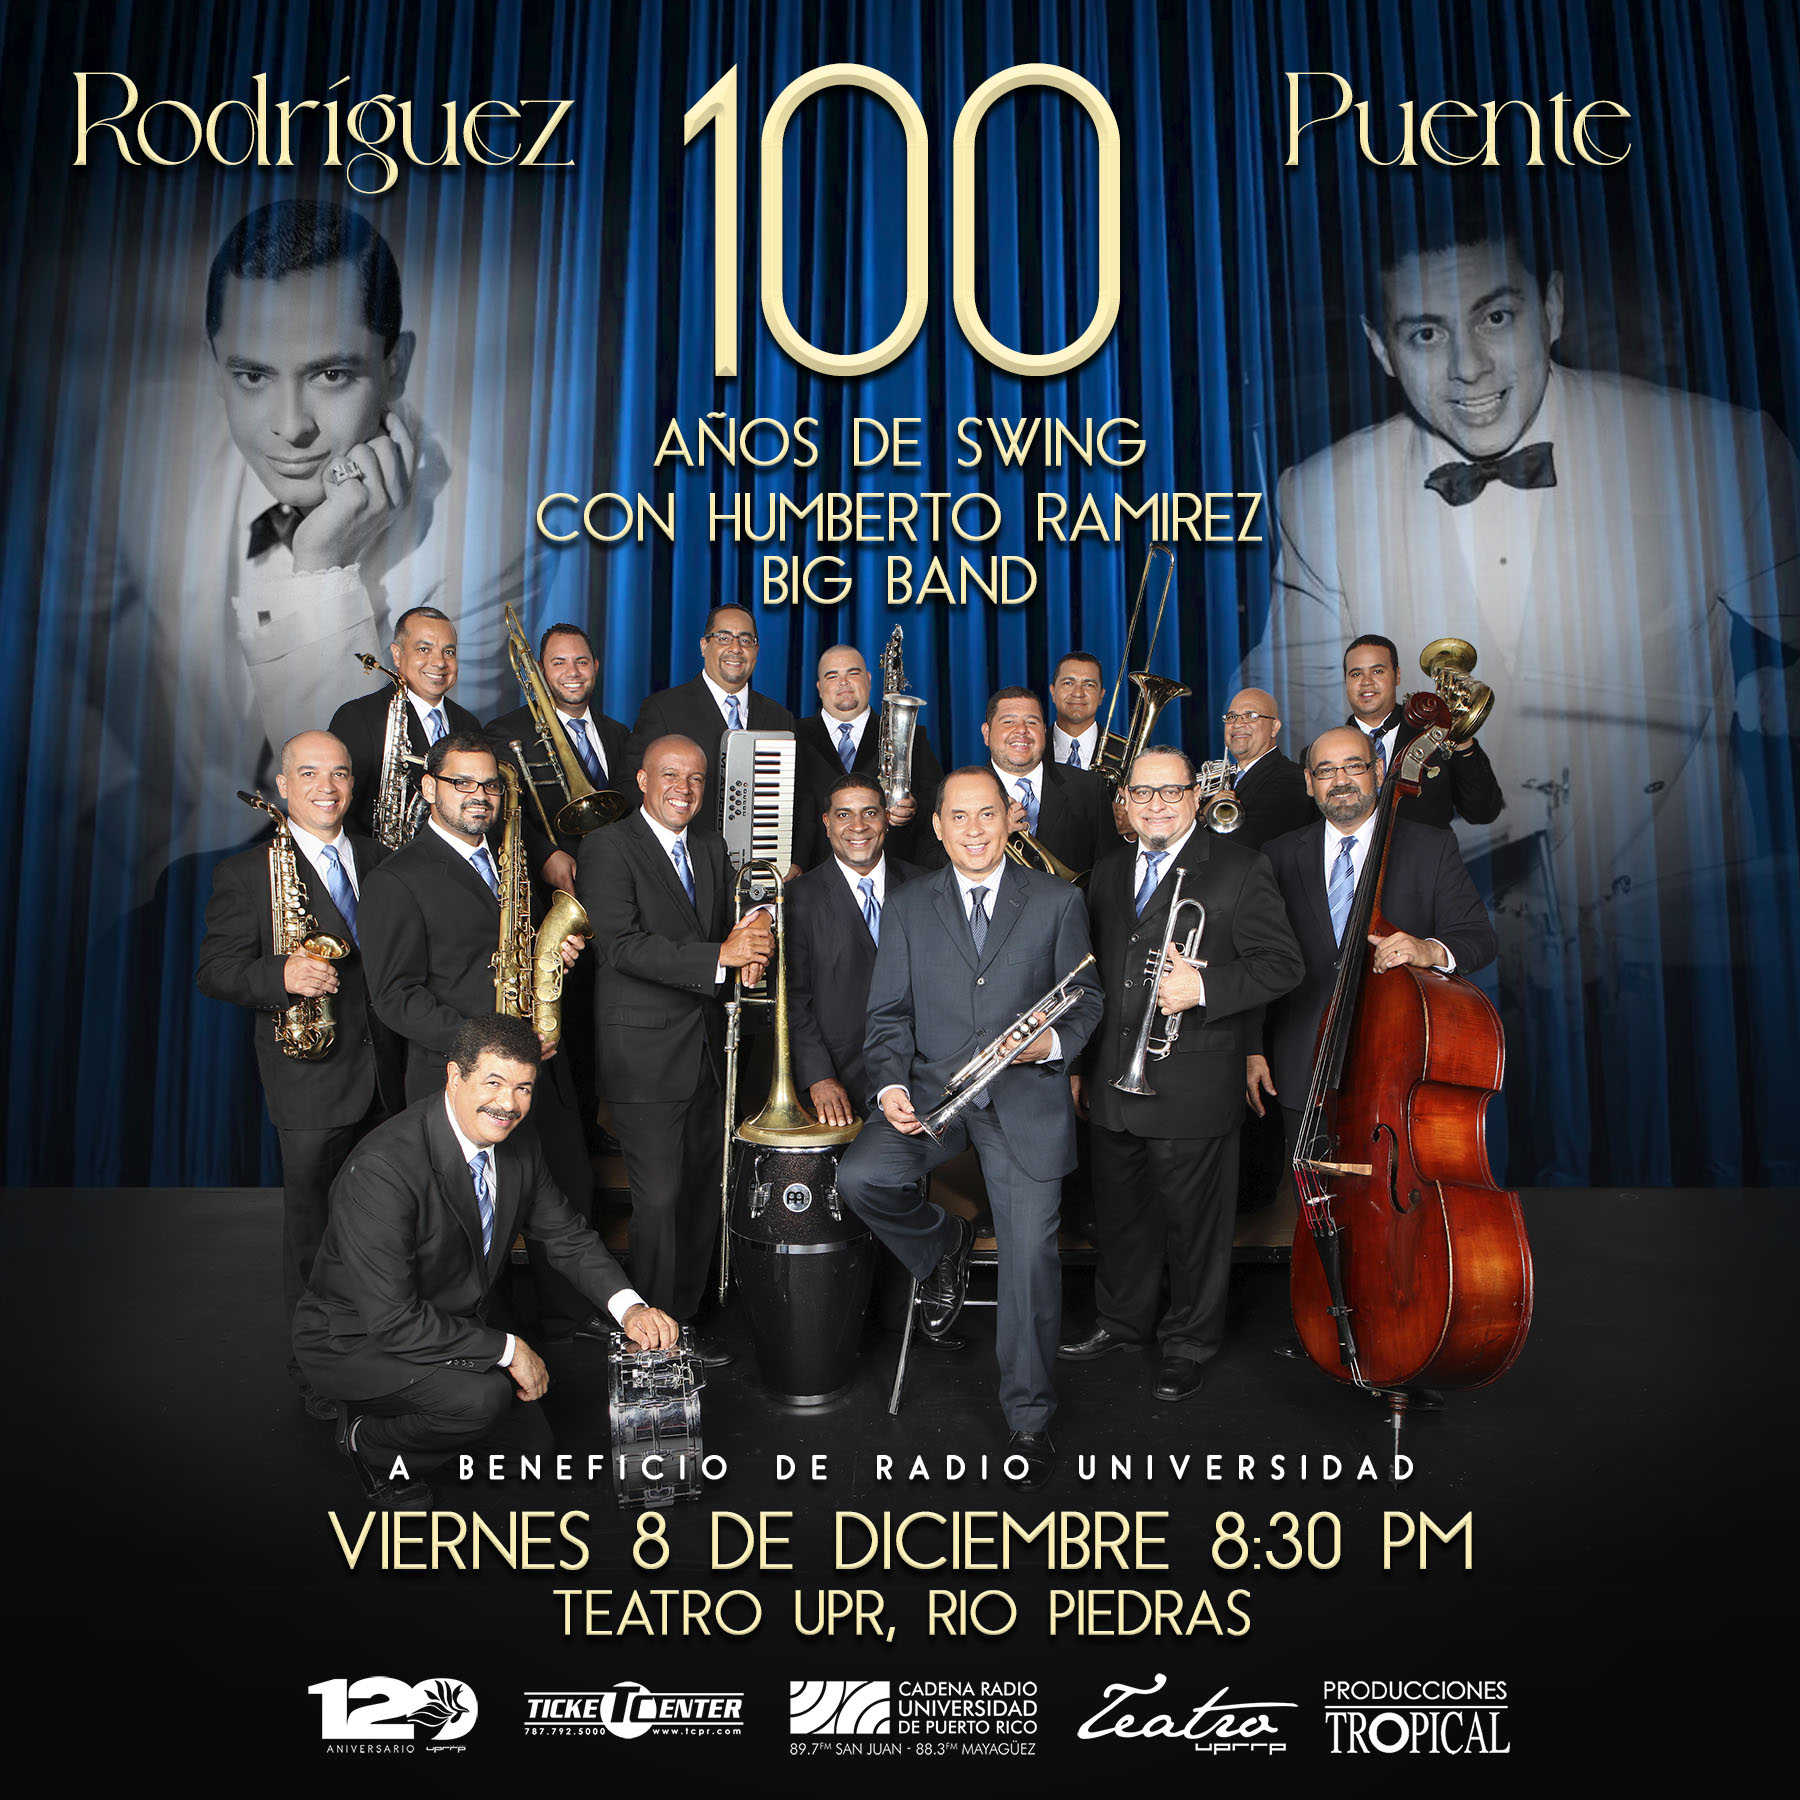 Puente & Rodríguez: 100 años de swing